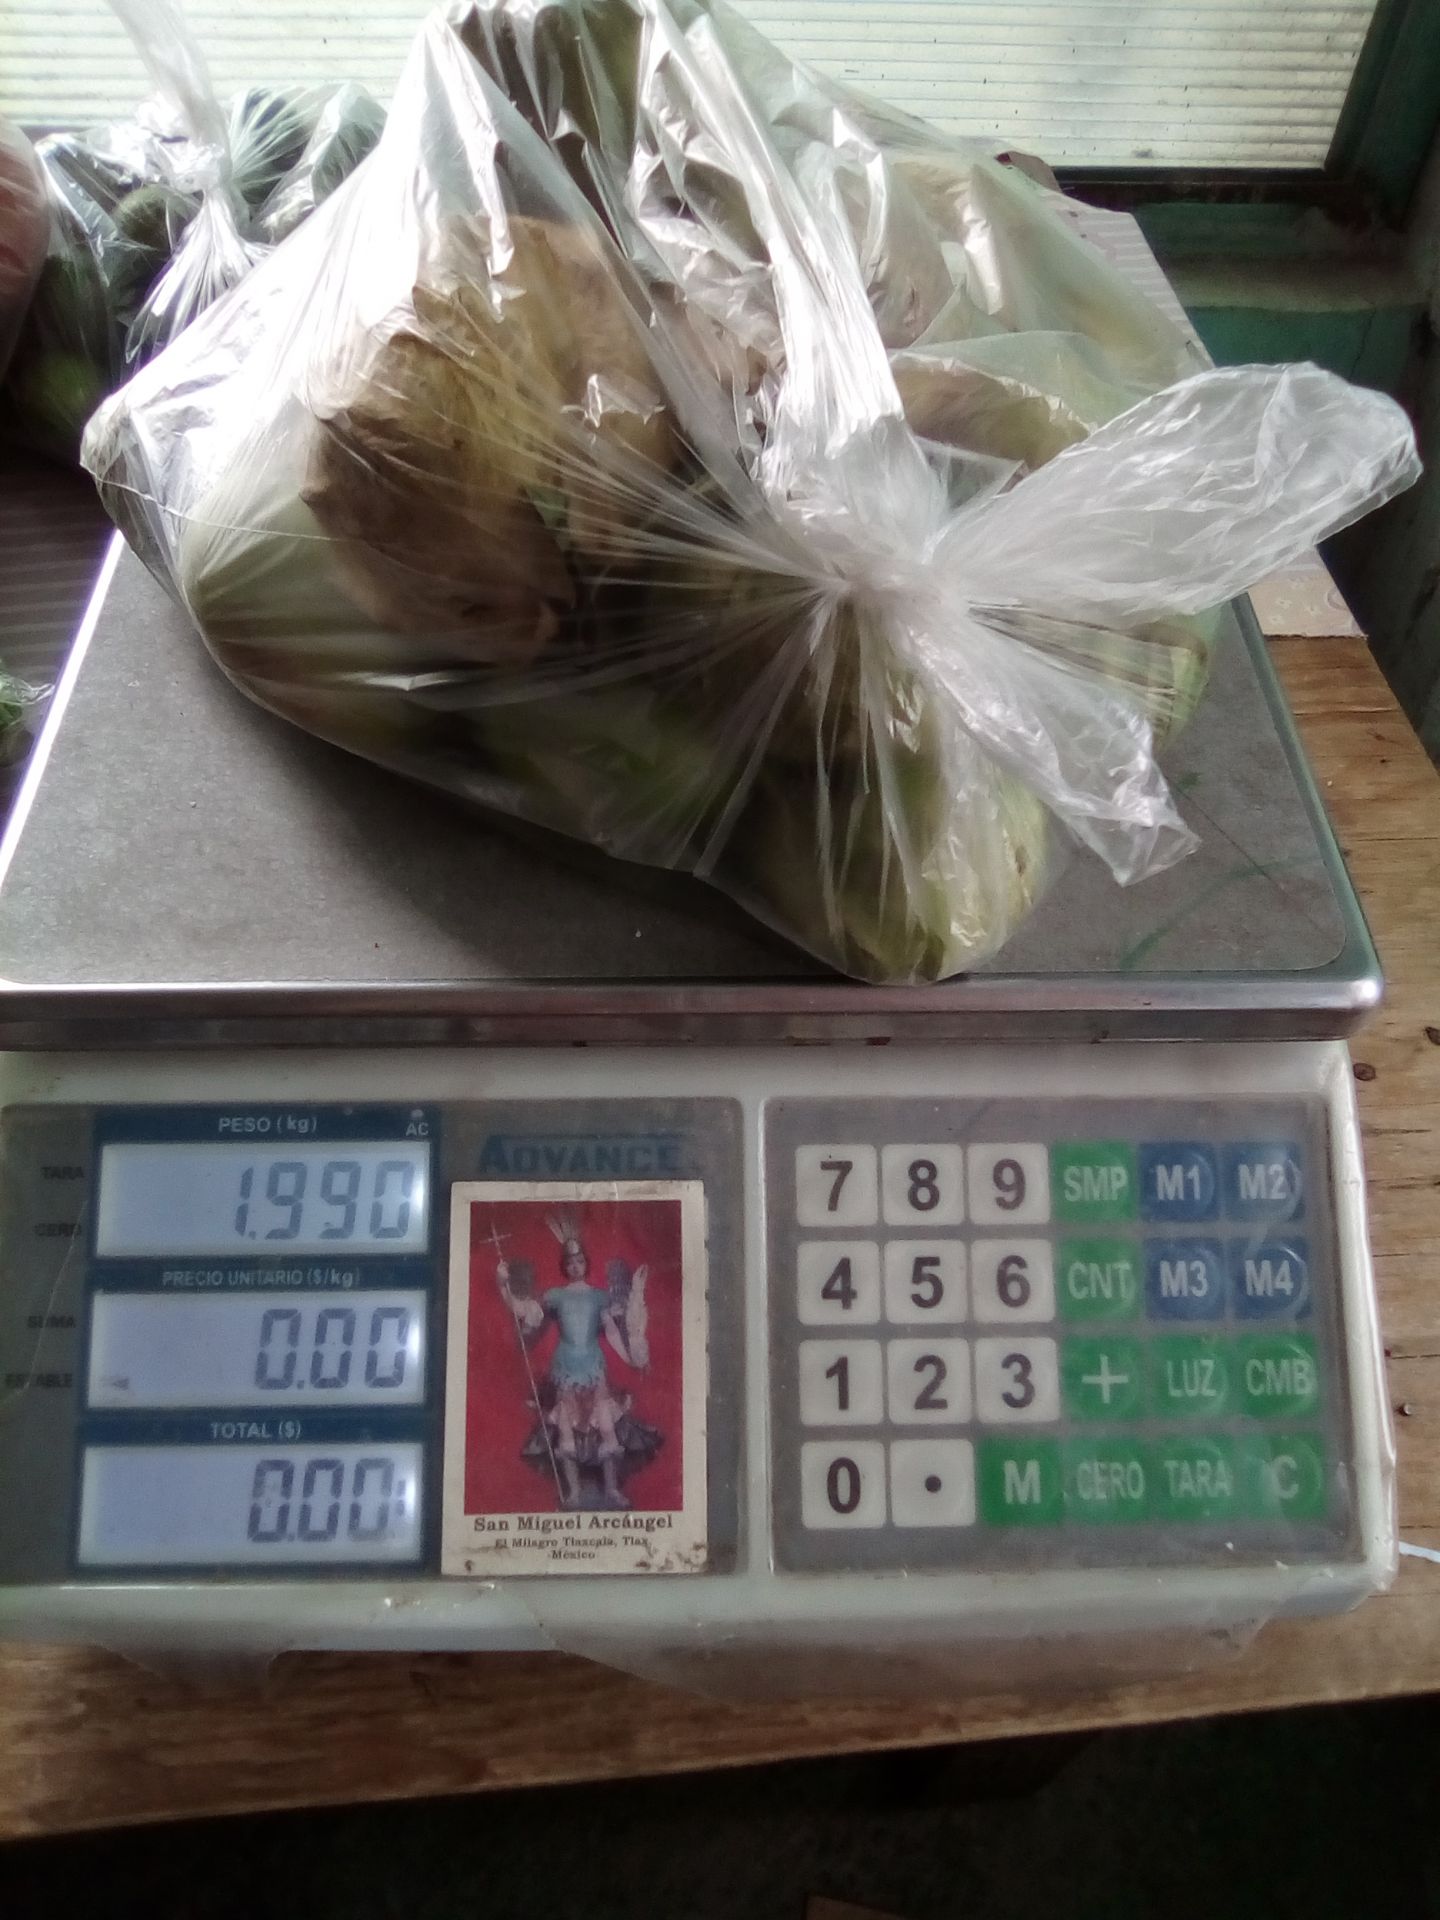 Tianguis de Texcoco venden kilos de 700 gramos.